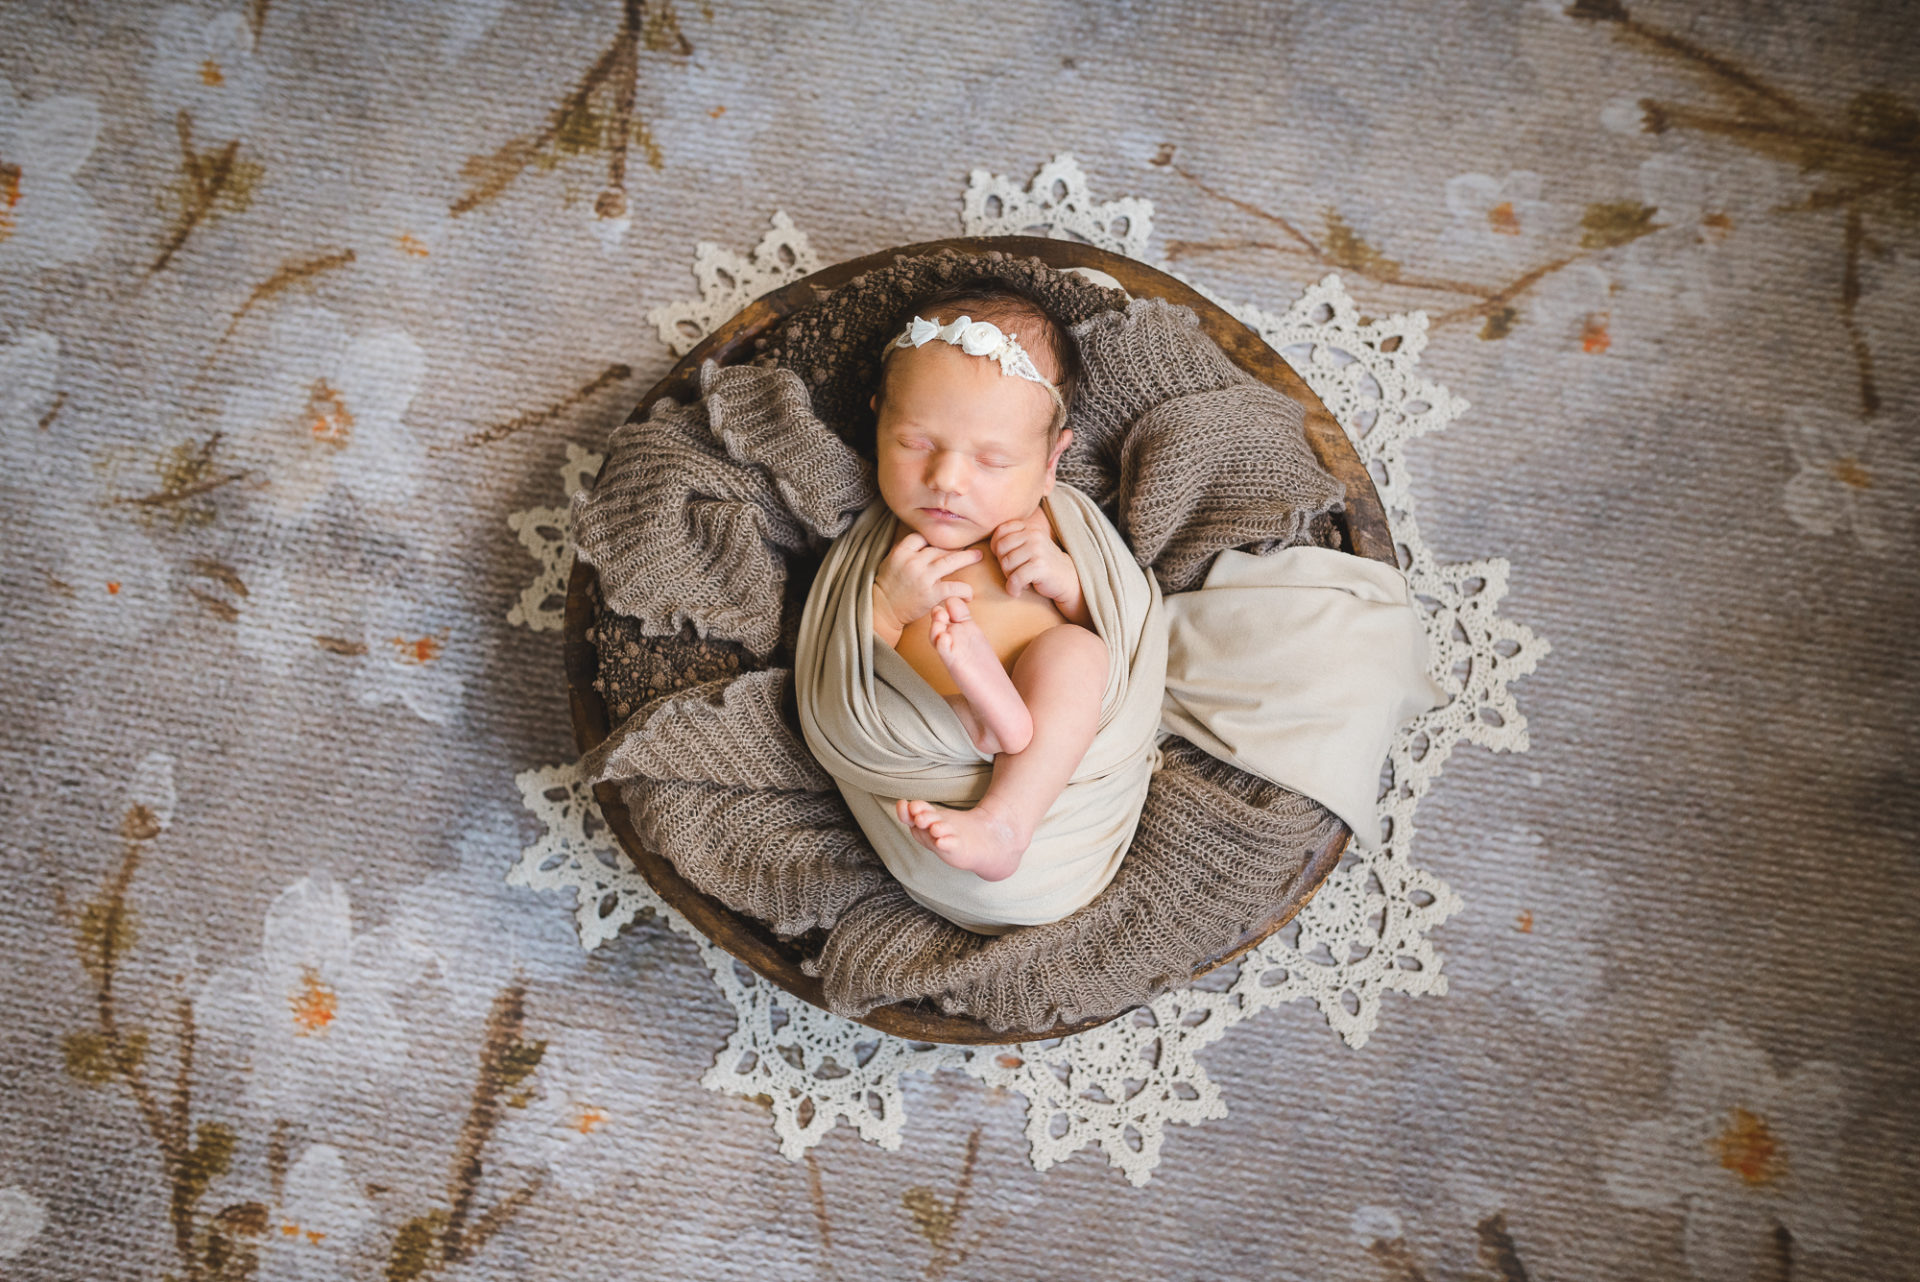 Tessa Trommer Fotografie Bad Berka Fotograf Babyfotografie Neugeborene natuerlich 1 von 1